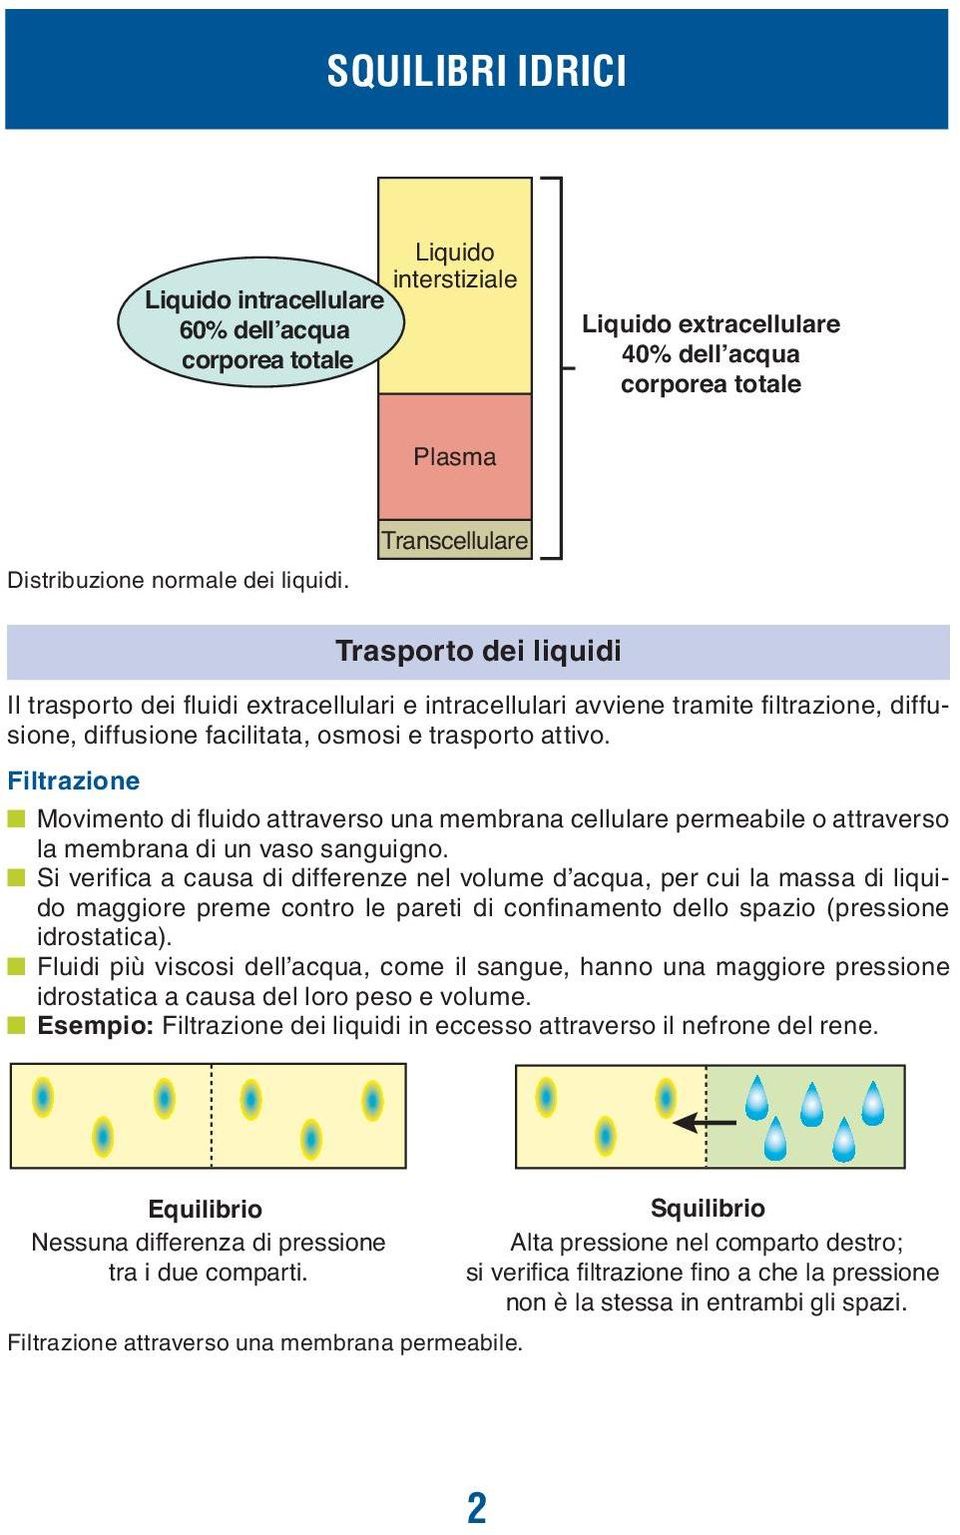 Transcellulare Trasporto dei liquidi Il trasporto dei fluidi extracellulari e intracellulari avviene tramite filtrazione, diffusione, diffusione facilitata, osmosi e trasporto attivo.